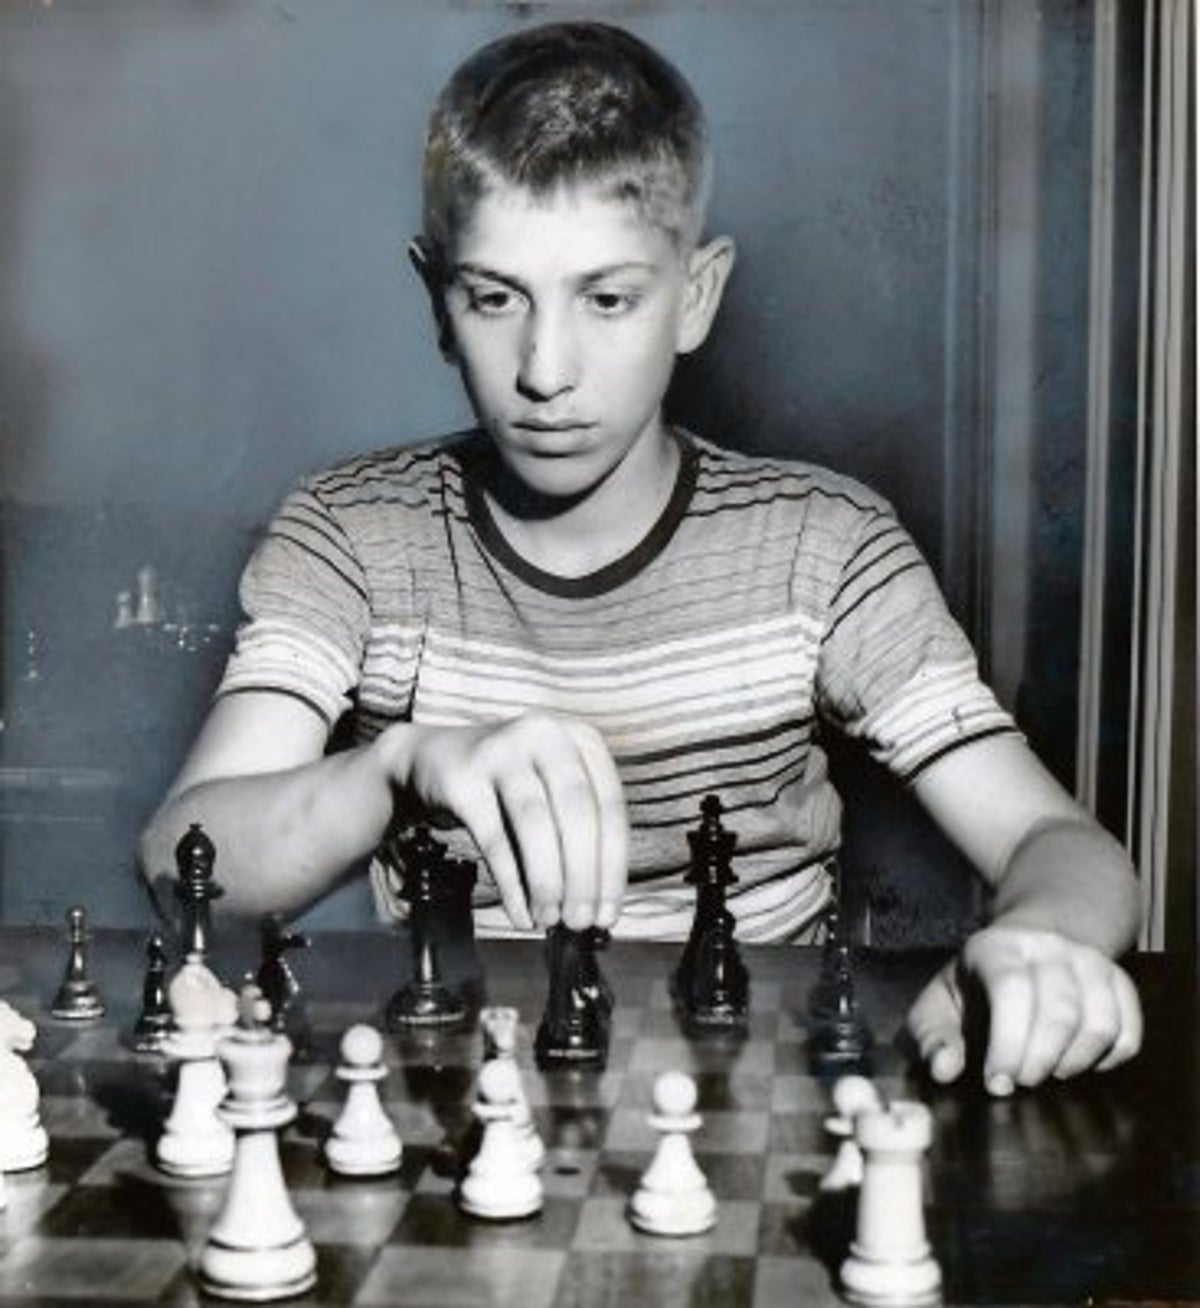 Bobby Fischer en Cuba - M. A. Sanchez y J. Suarez